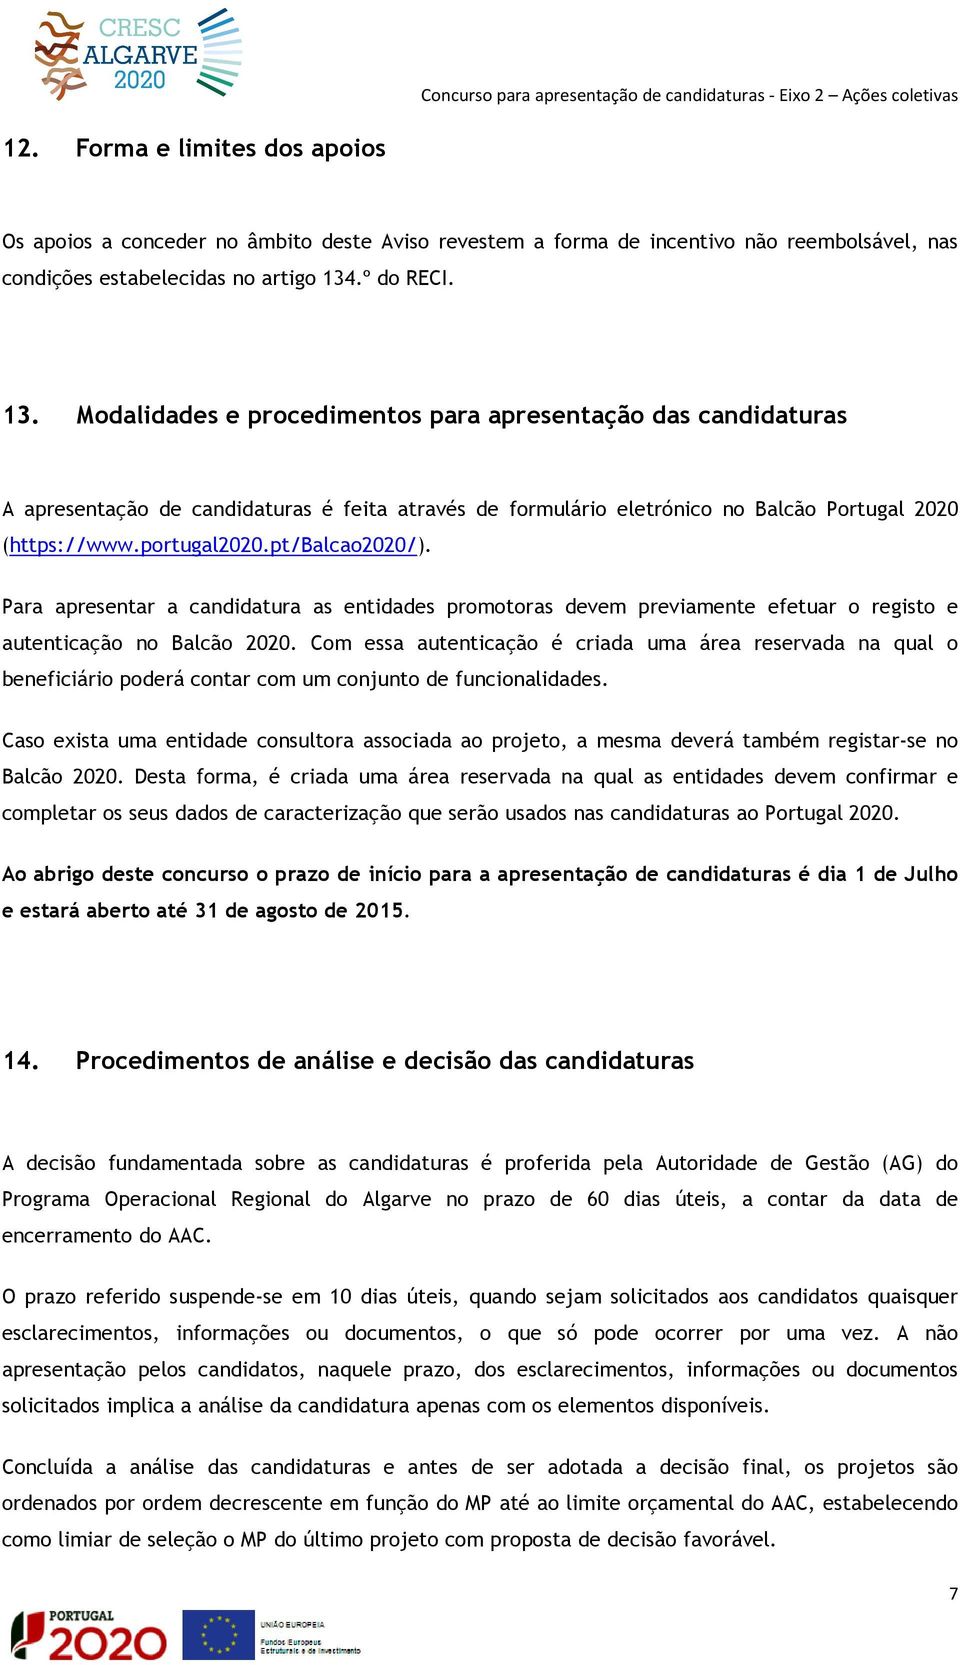 portugal2020.pt/balcao2020/). Para apresentar a candidatura as entidades promotoras devem previamente efetuar o registo e autenticação no Balcão 2020.